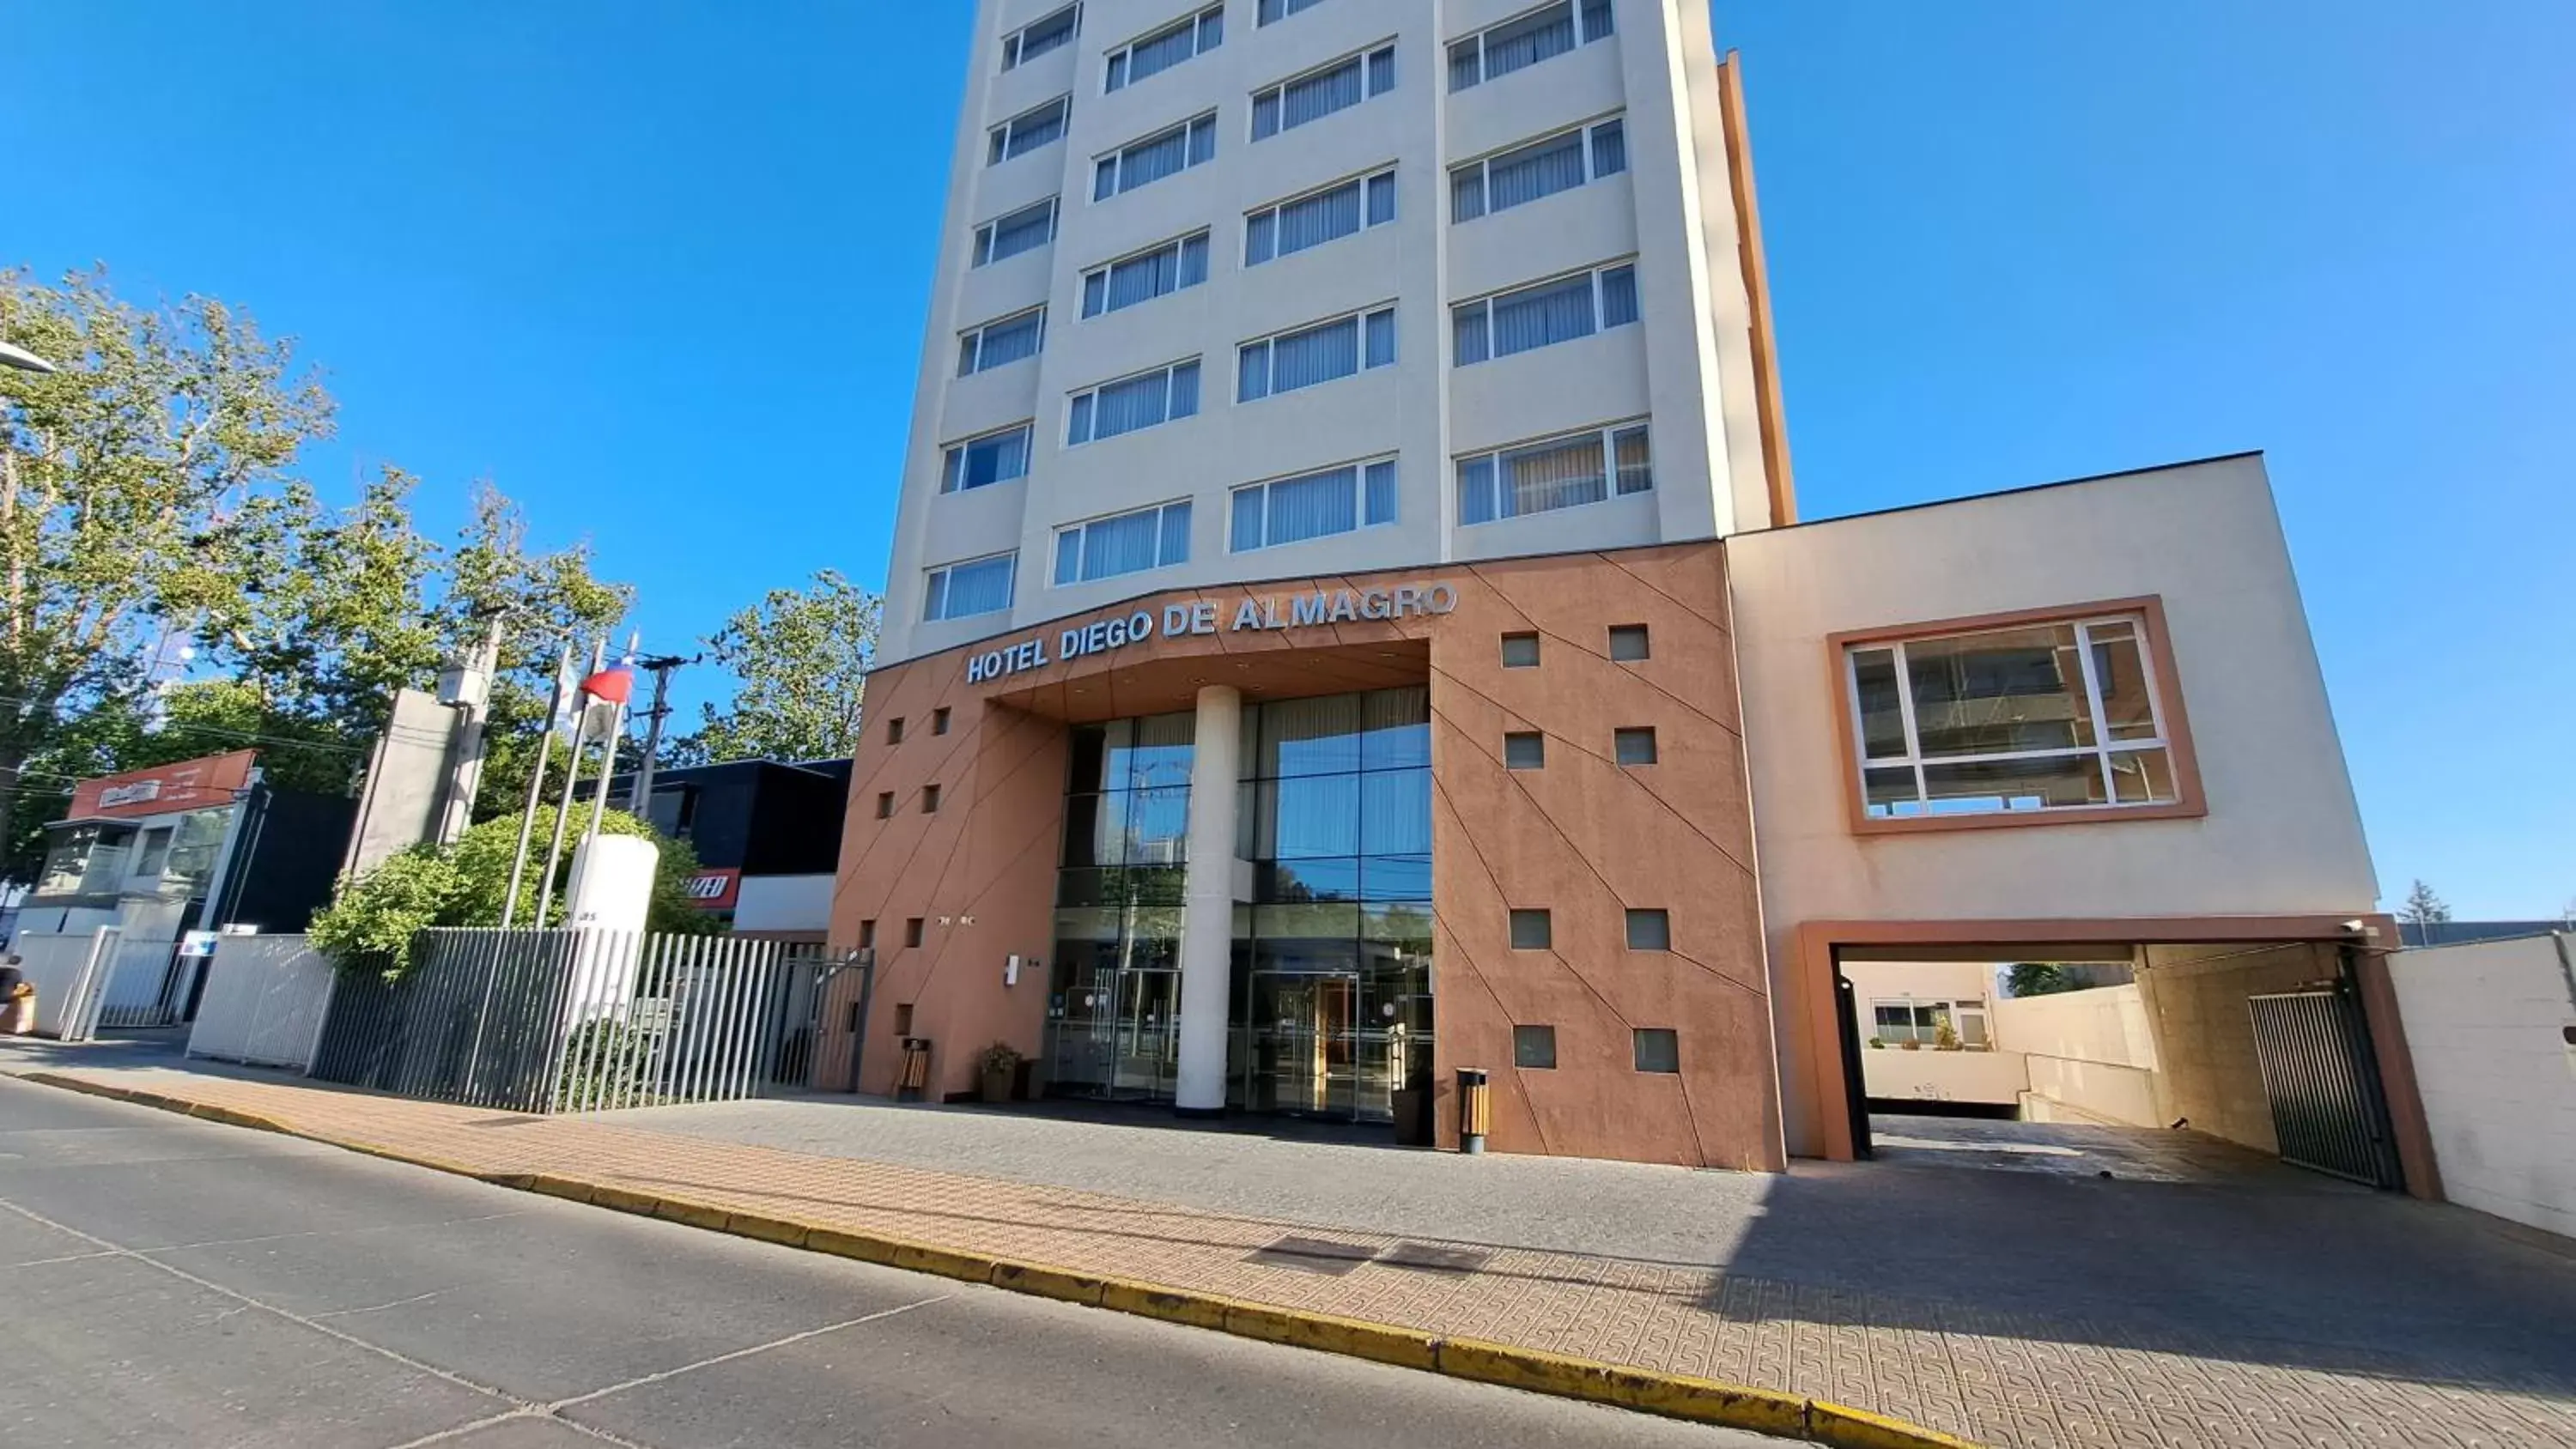 Facade/entrance, Property Building in Hotel Diego de Almagro Curicó